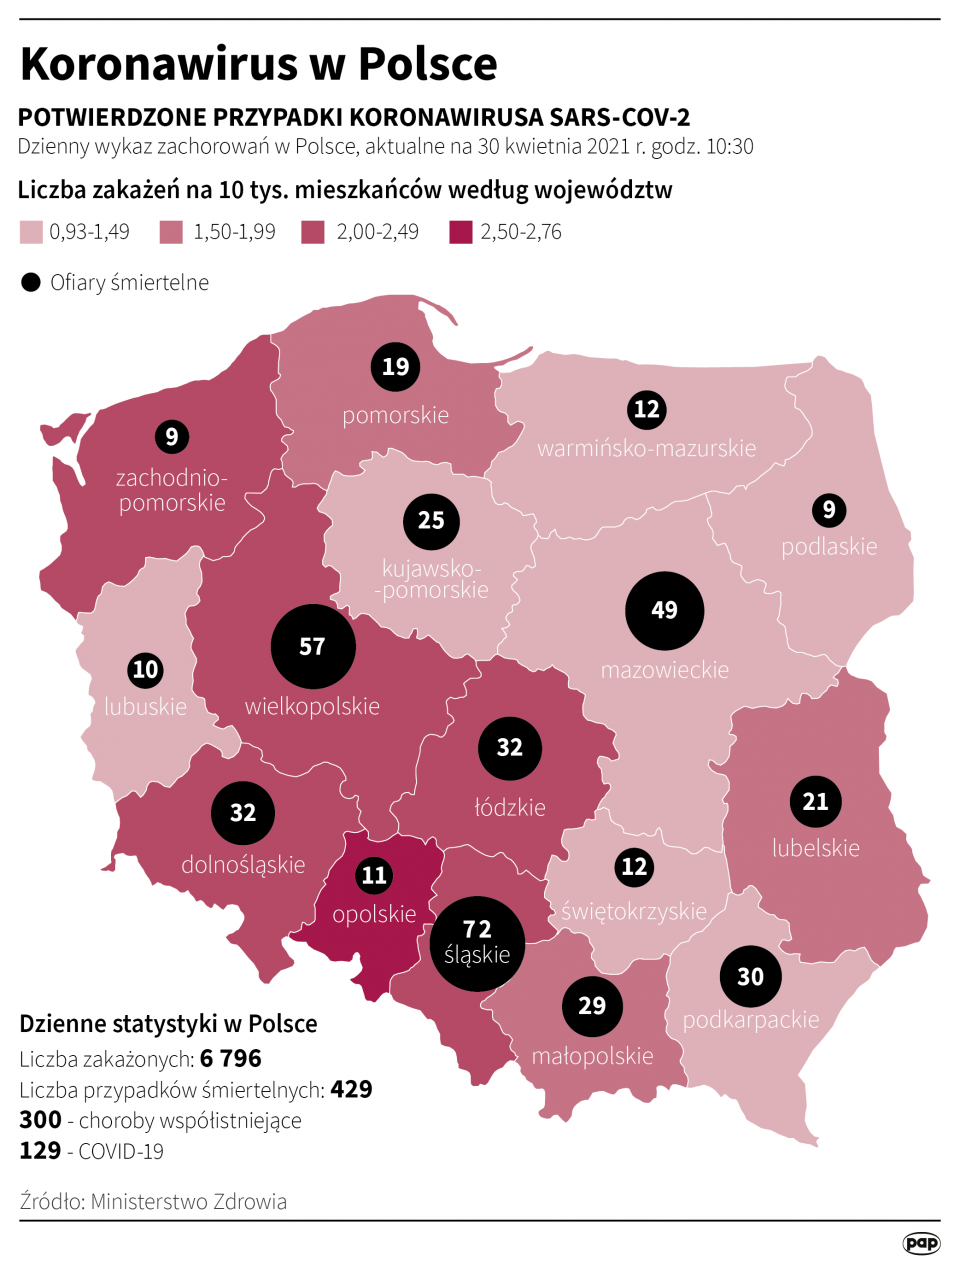 Koronawirus w Polsce stan na 30 kwietnia [autor: Maria Samczuk, źródło: PAP]